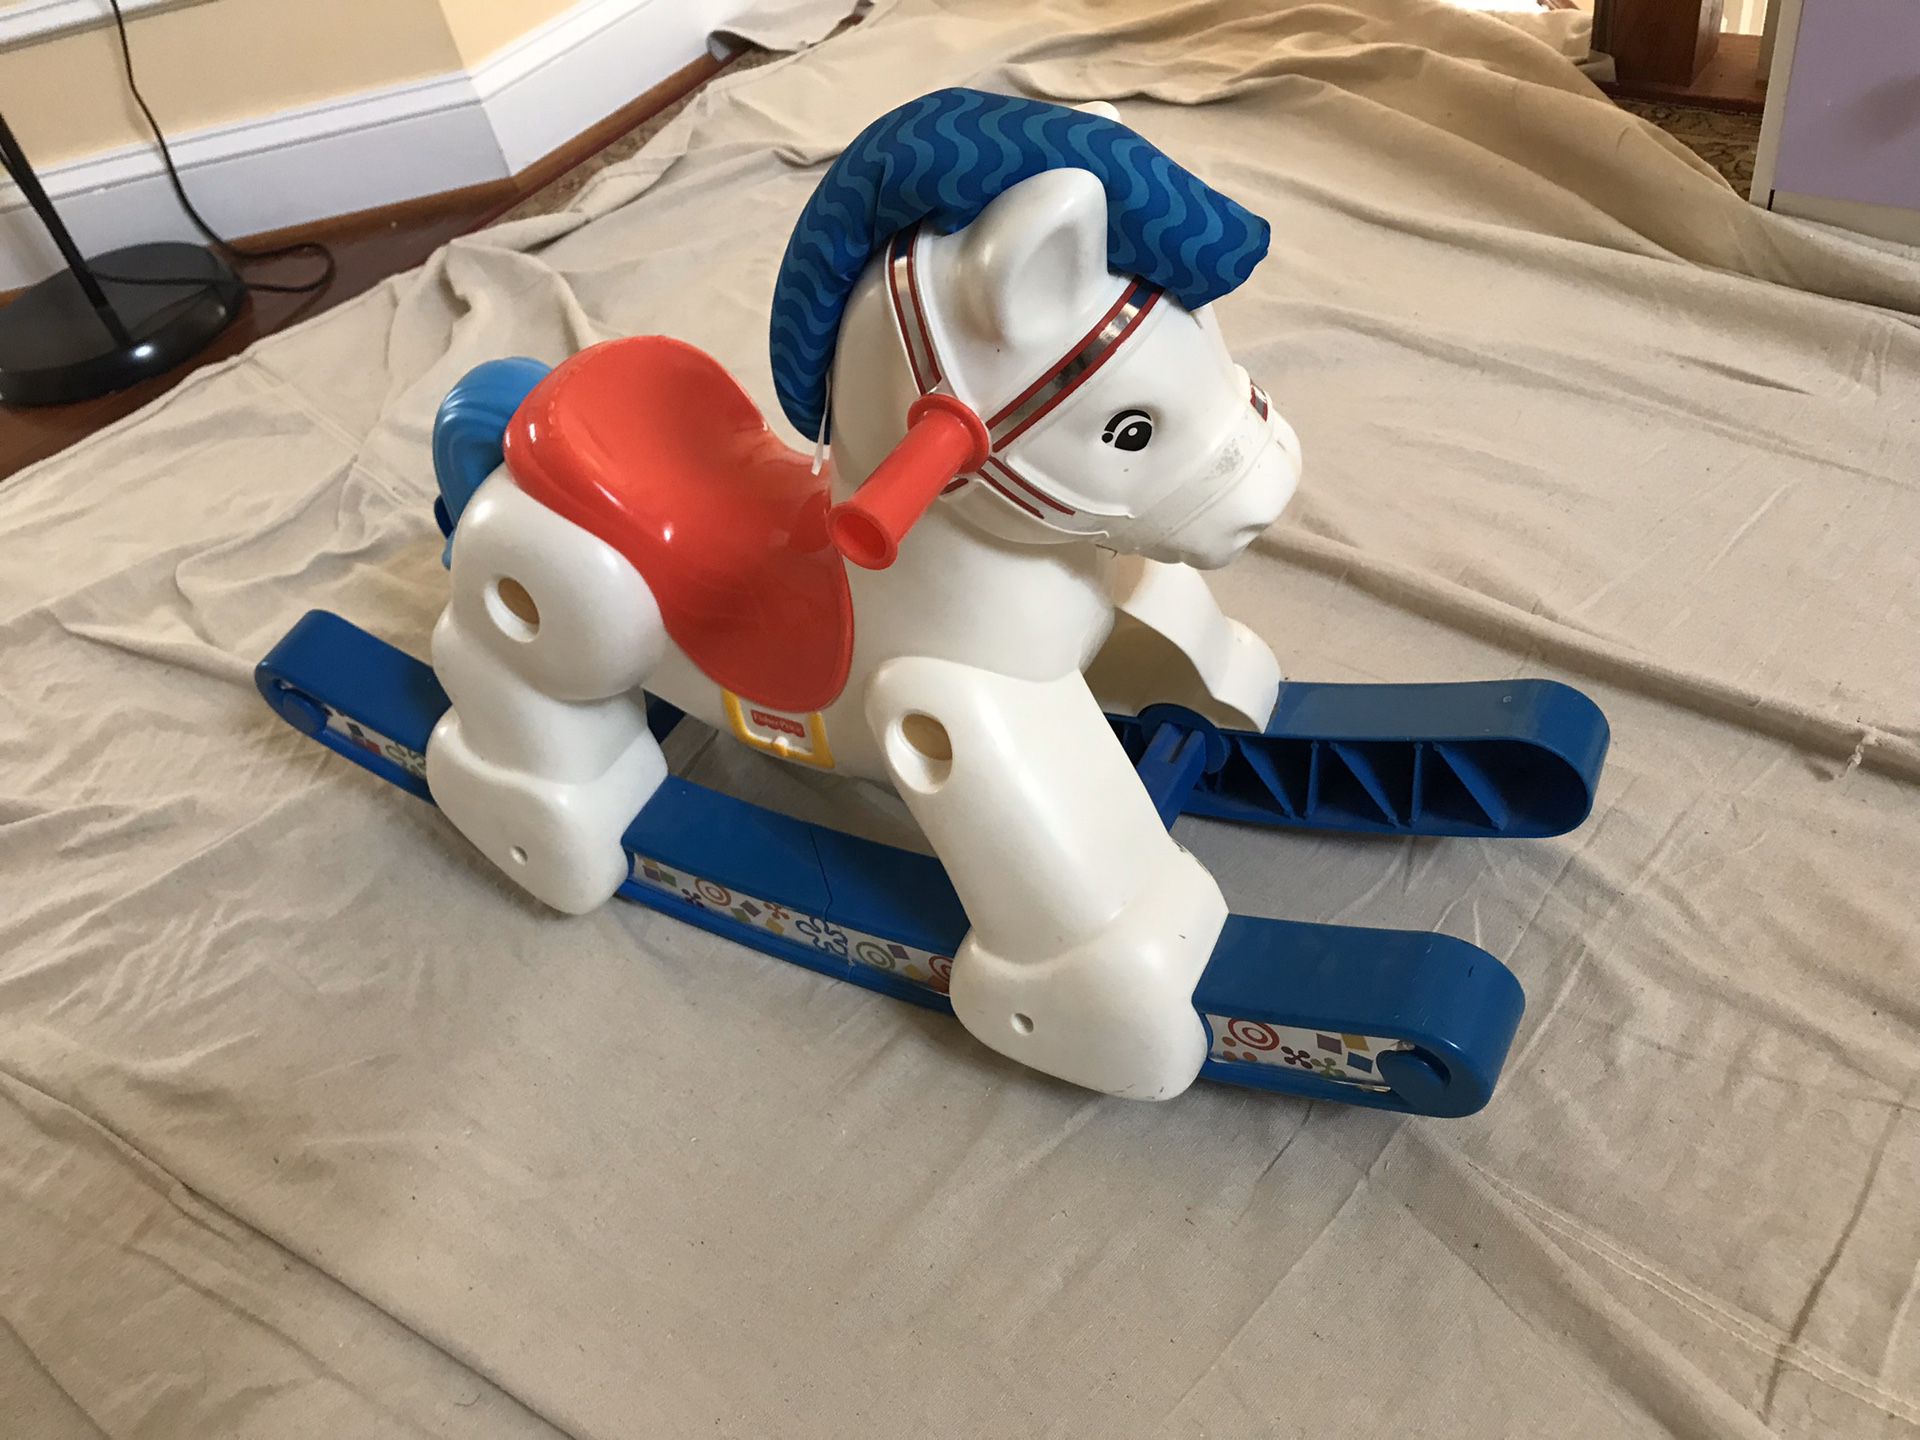 Rocking horse toys